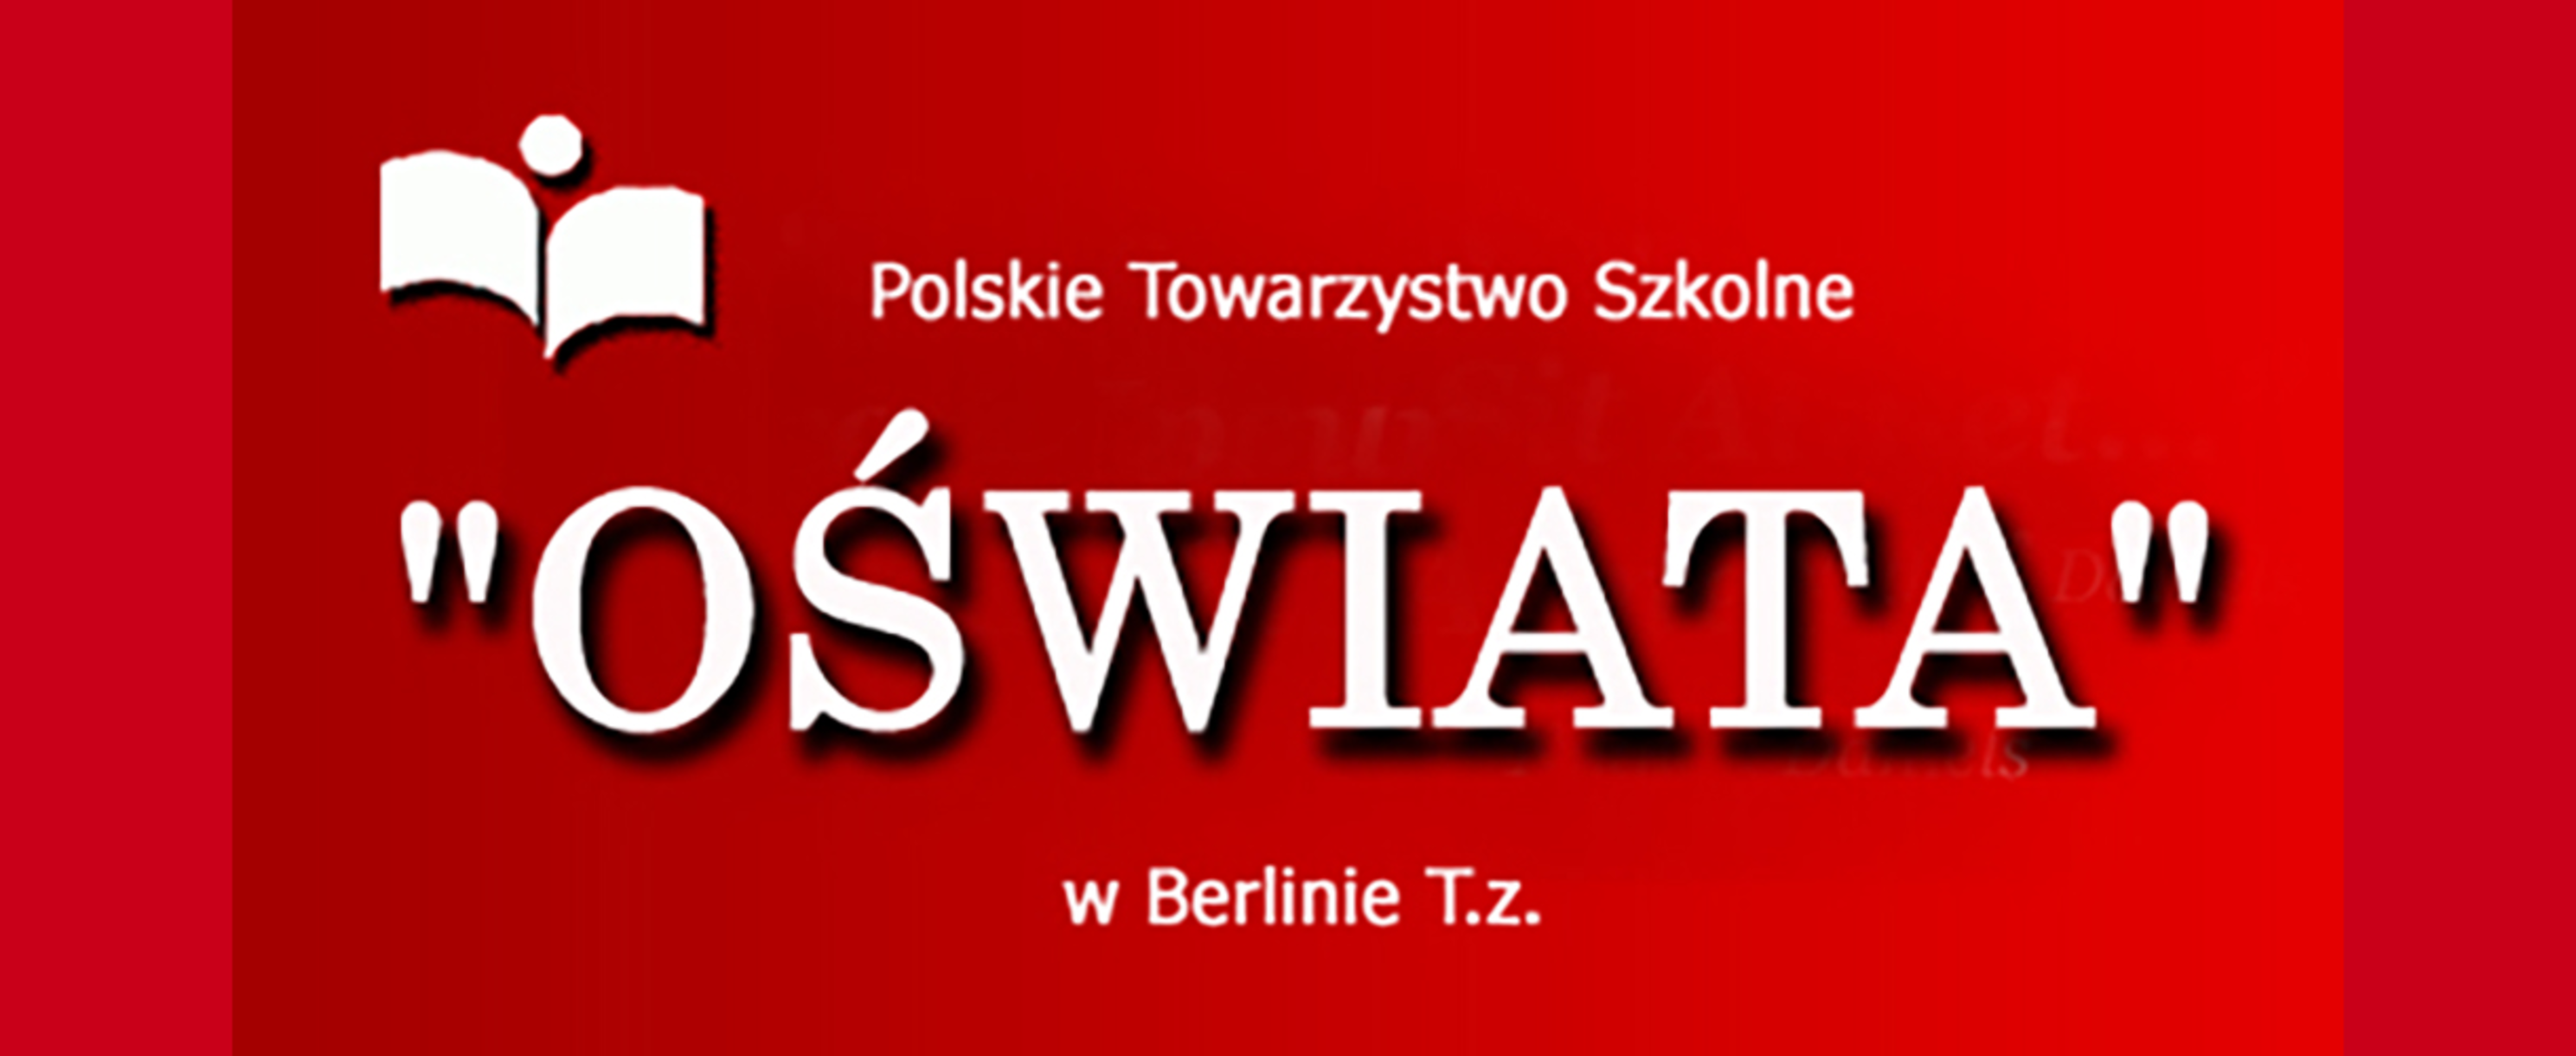 Polnischer Schulverein “OŚWIATA” in Berlin e.V.